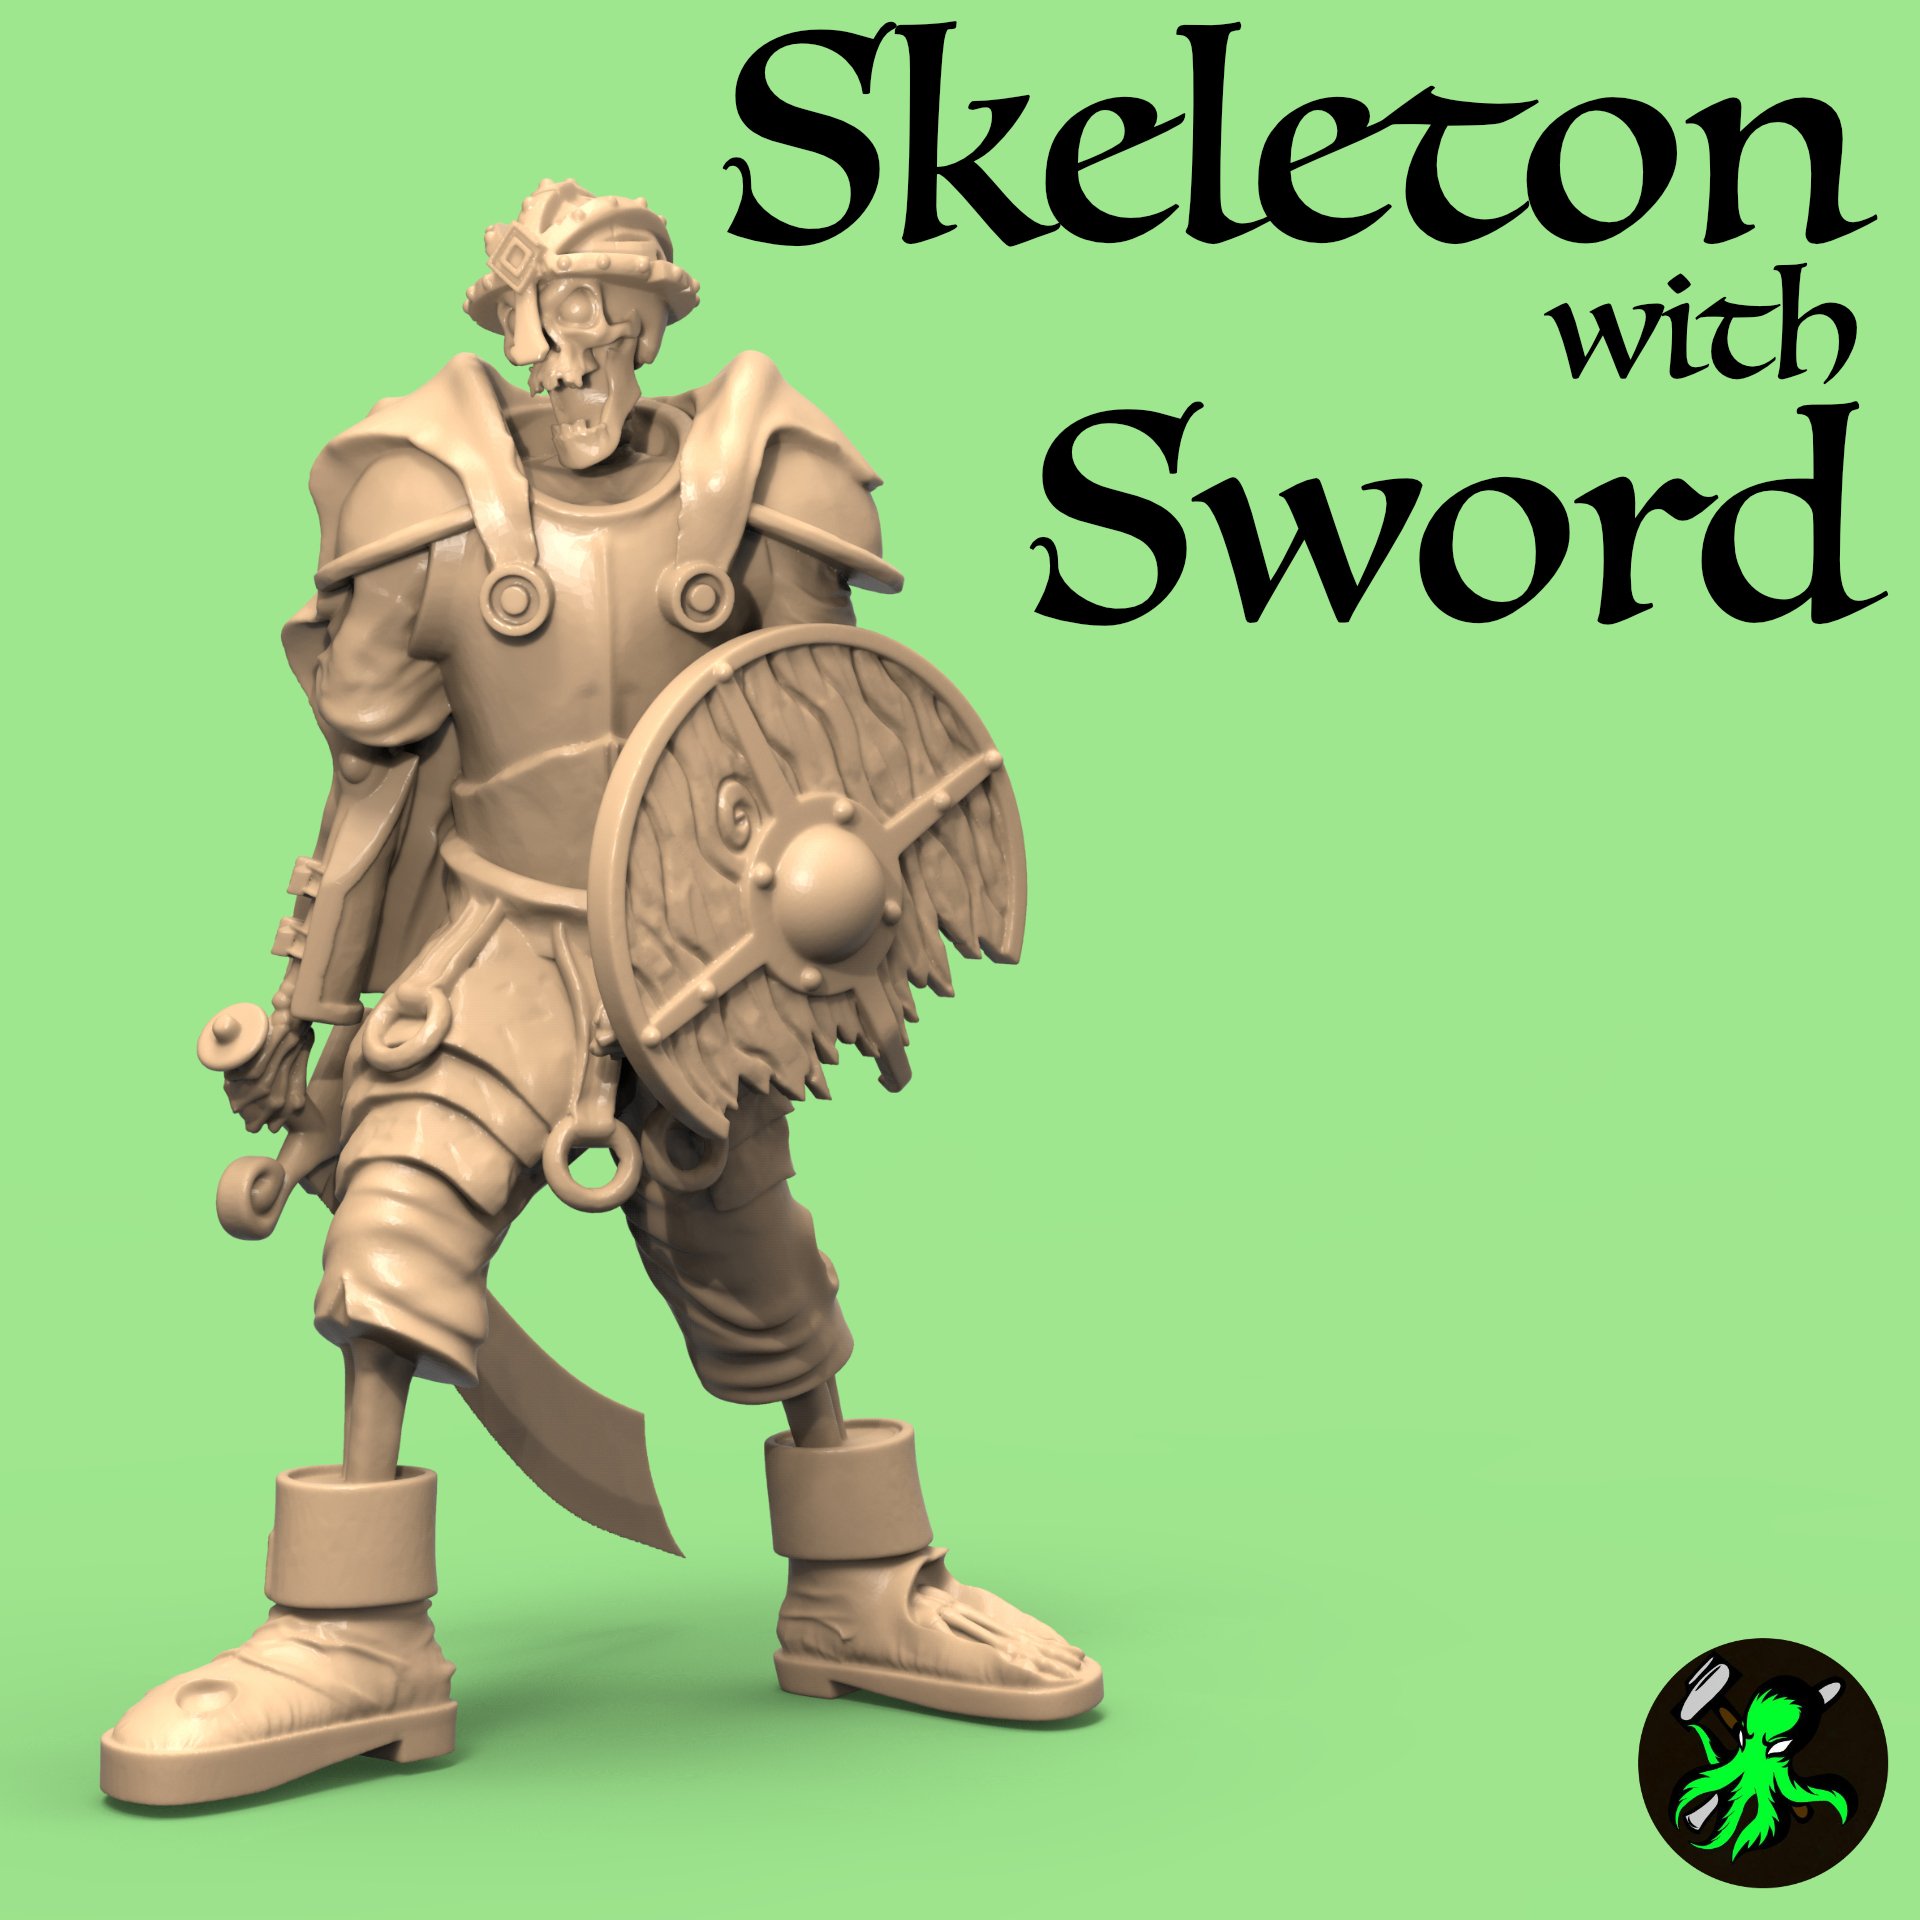 Skeleton with Sword.jpg